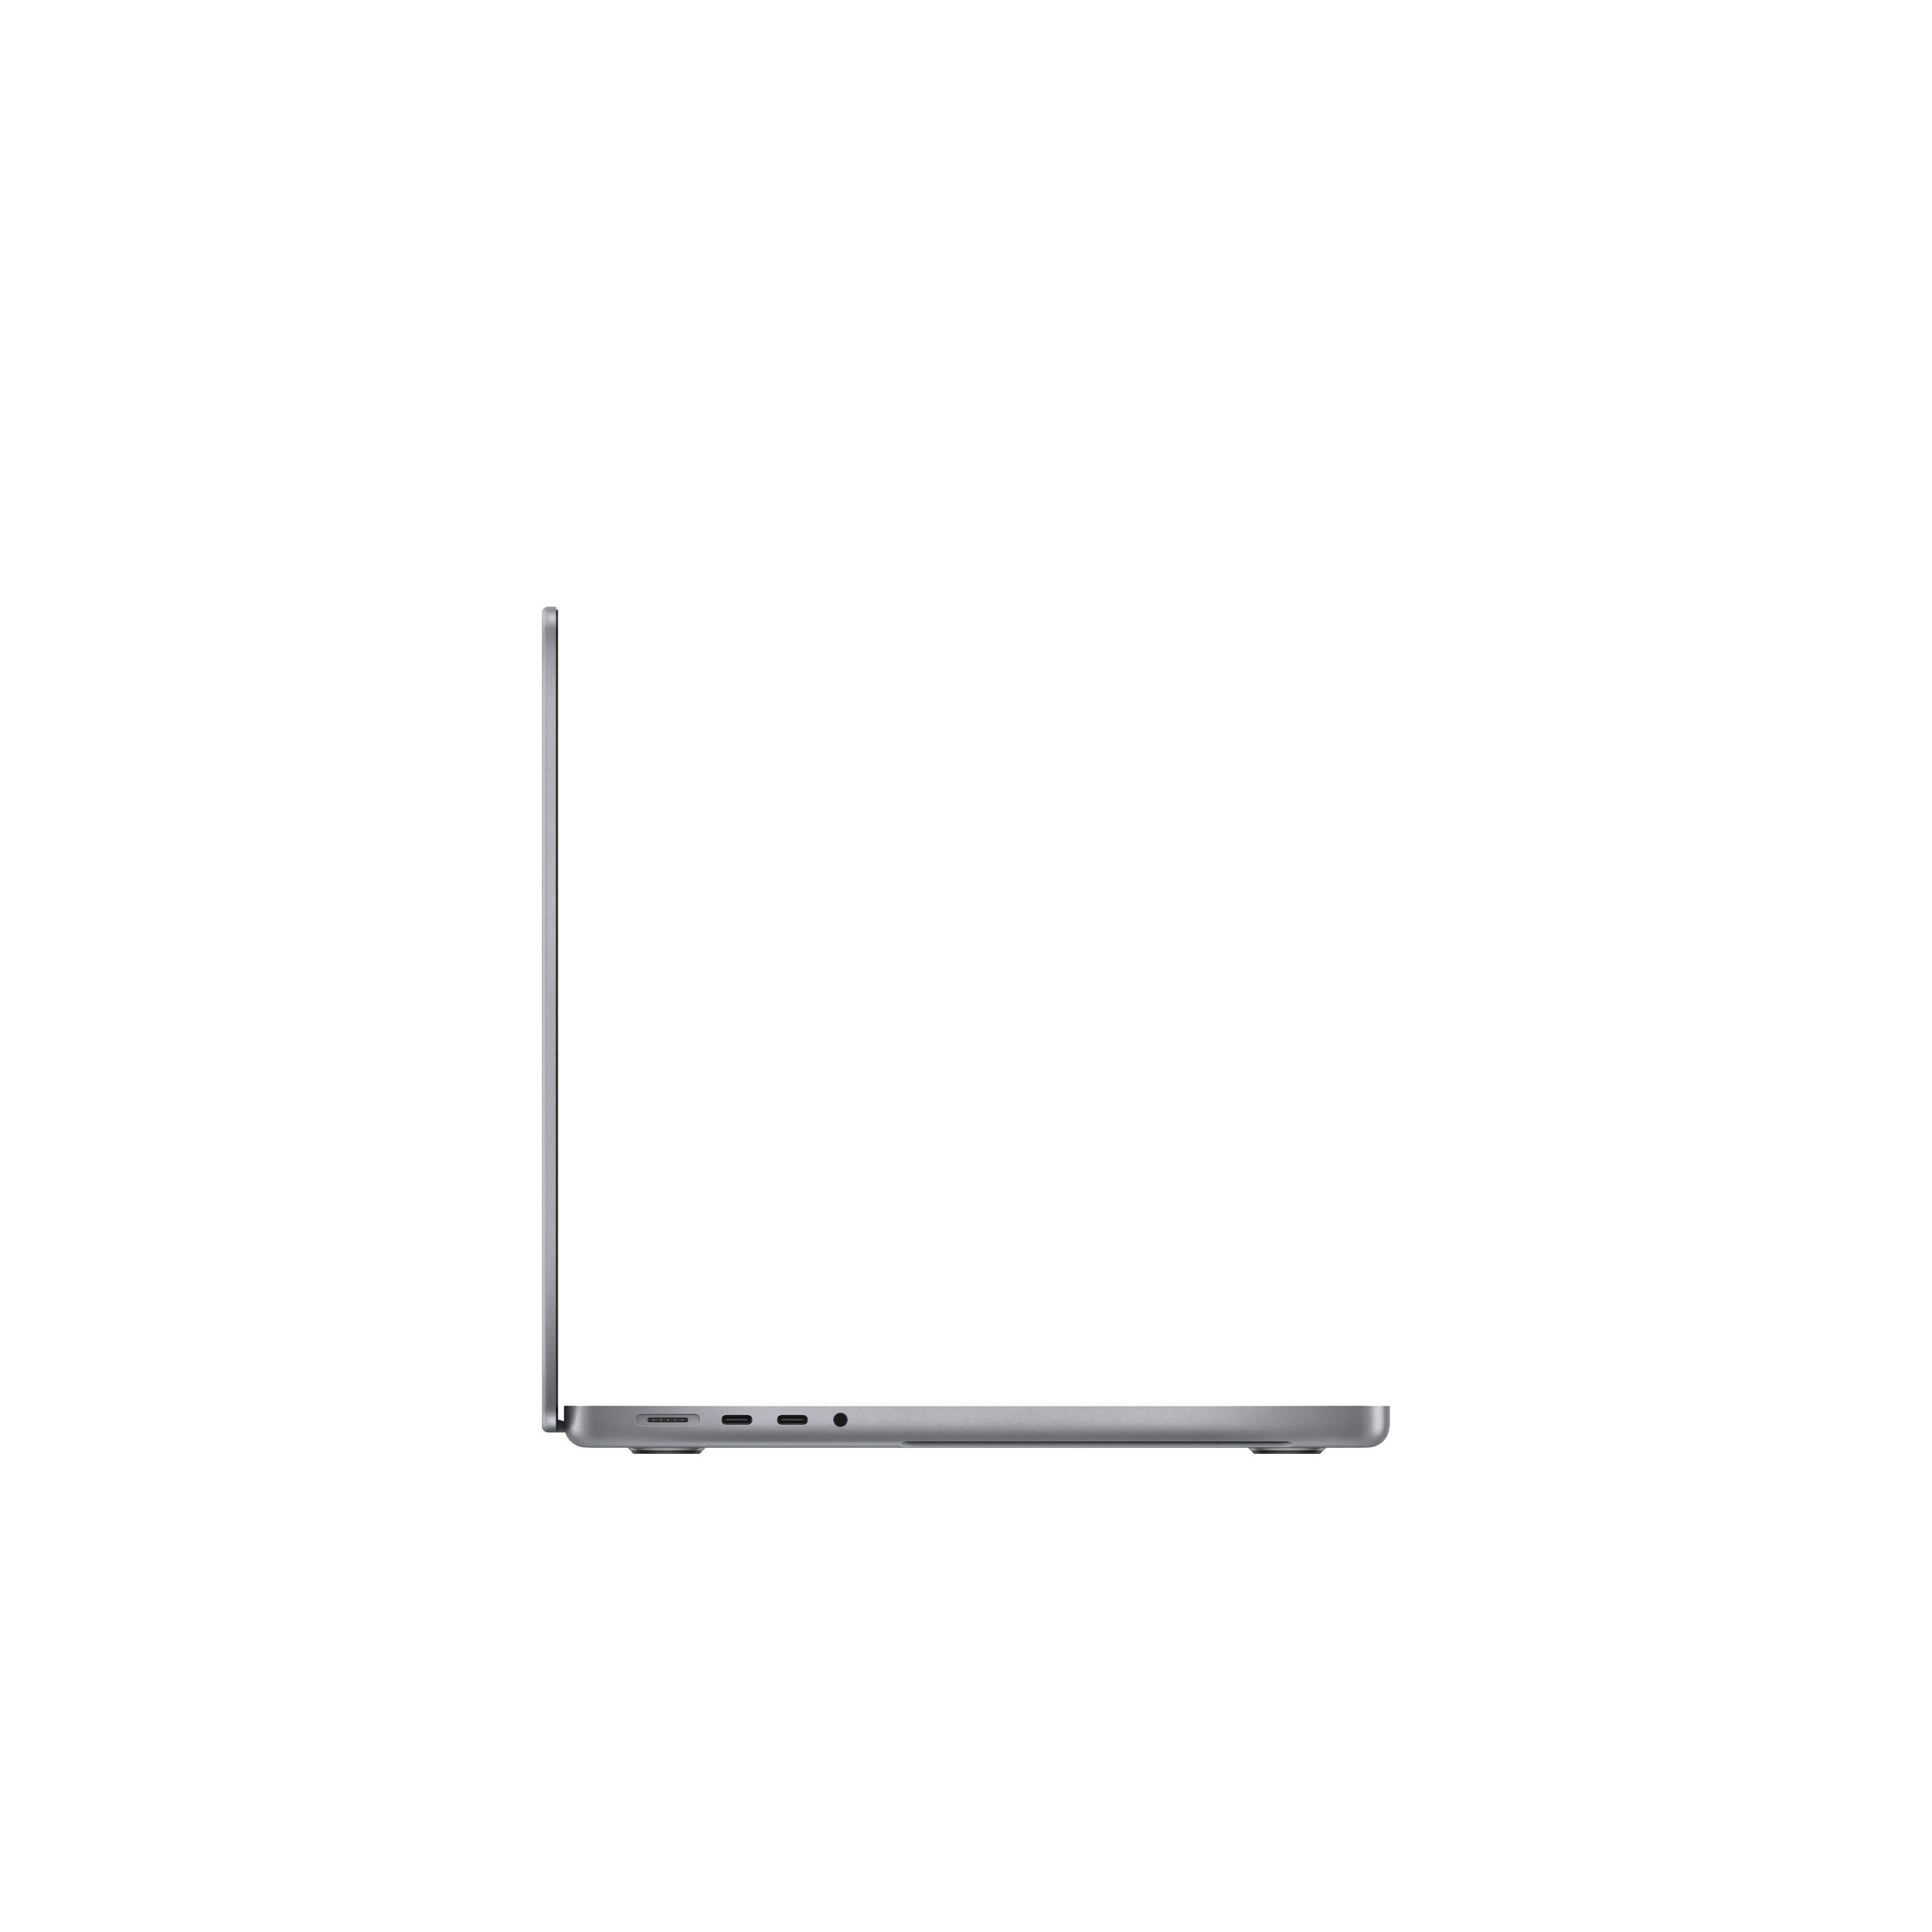 Macbook Pro 14-inch M1 Pro 10-core CPU 16-Core GPU , 16GB memory, 512gb SSD, Space Gray